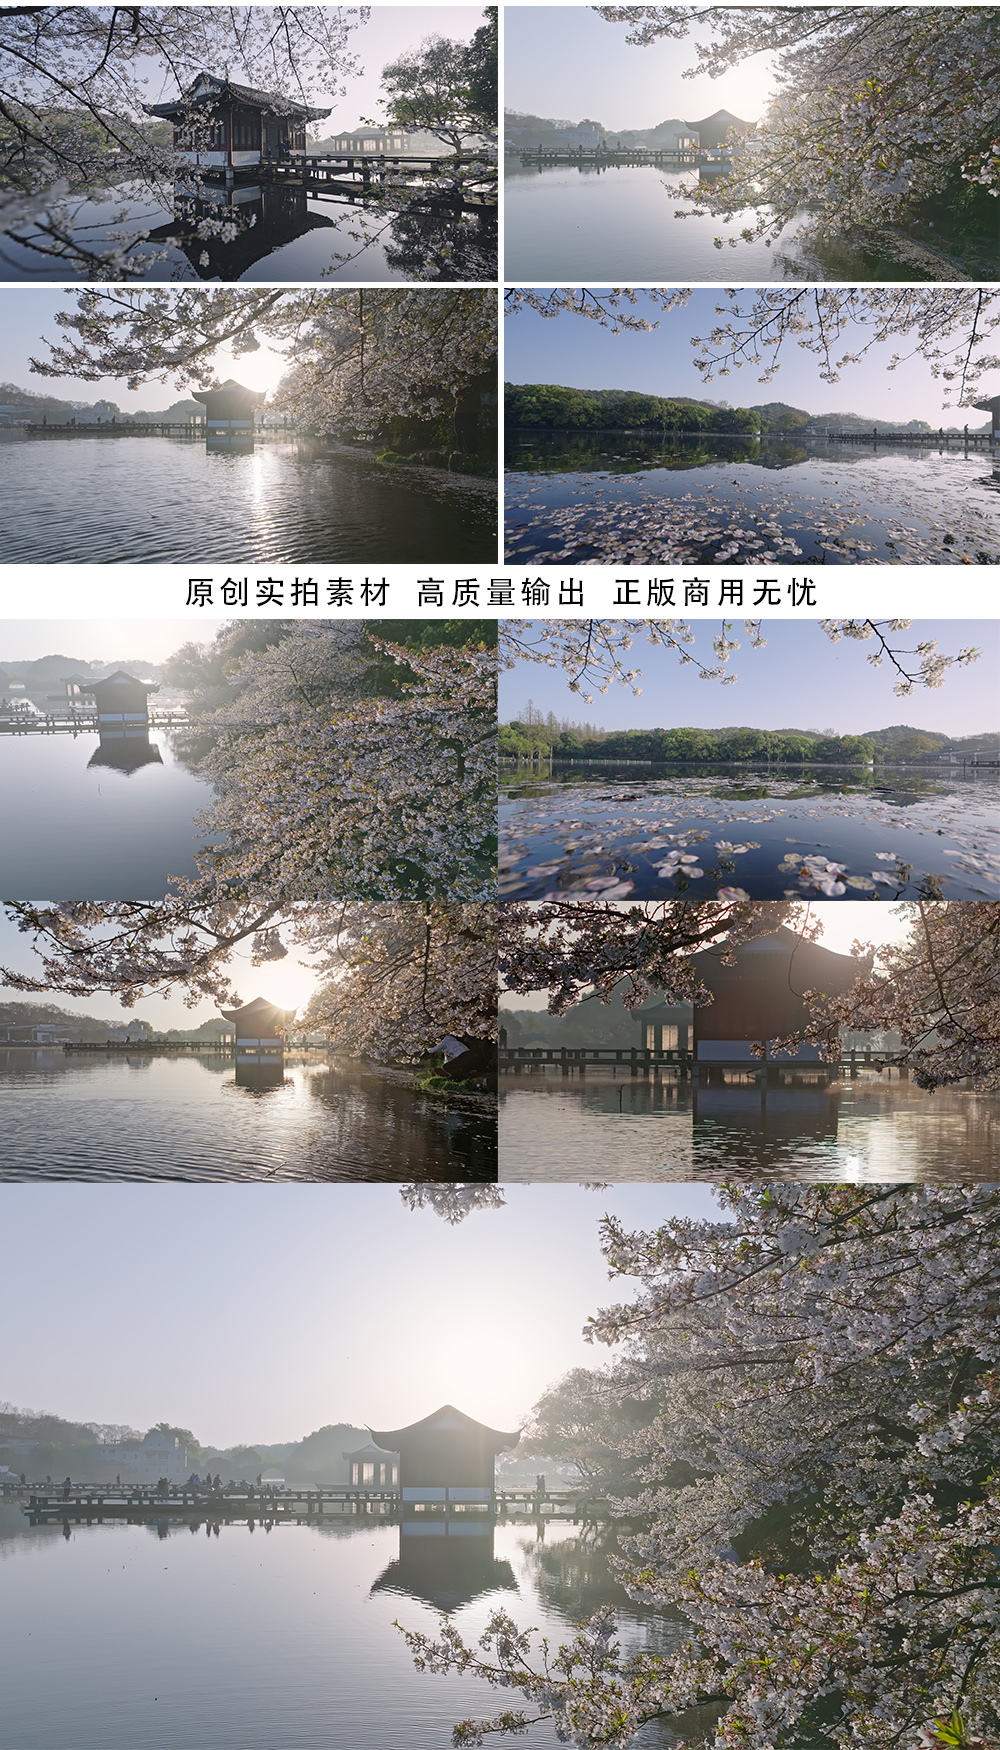 杭州西湖曲院风荷樱花